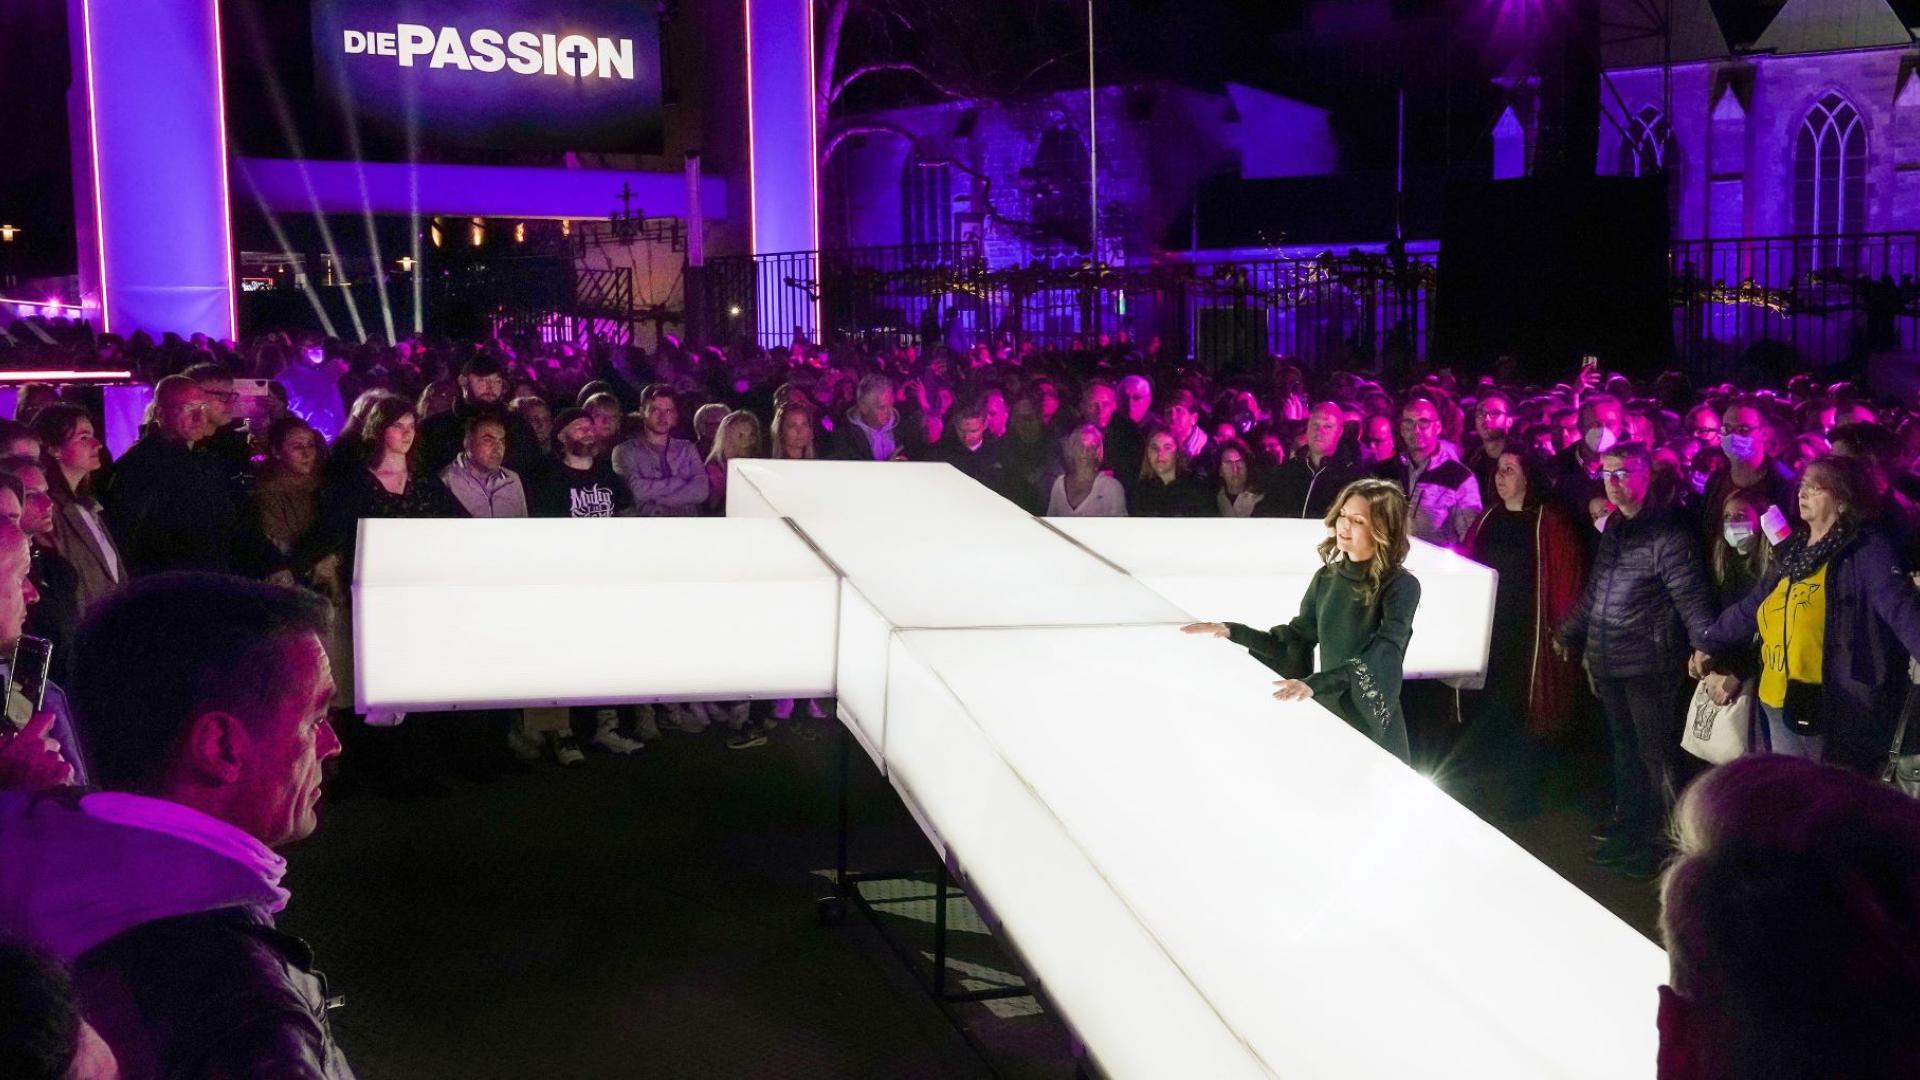 Ein leuchtendes Kreuz ist bei der Passion bei RTL inmitten von Menschen